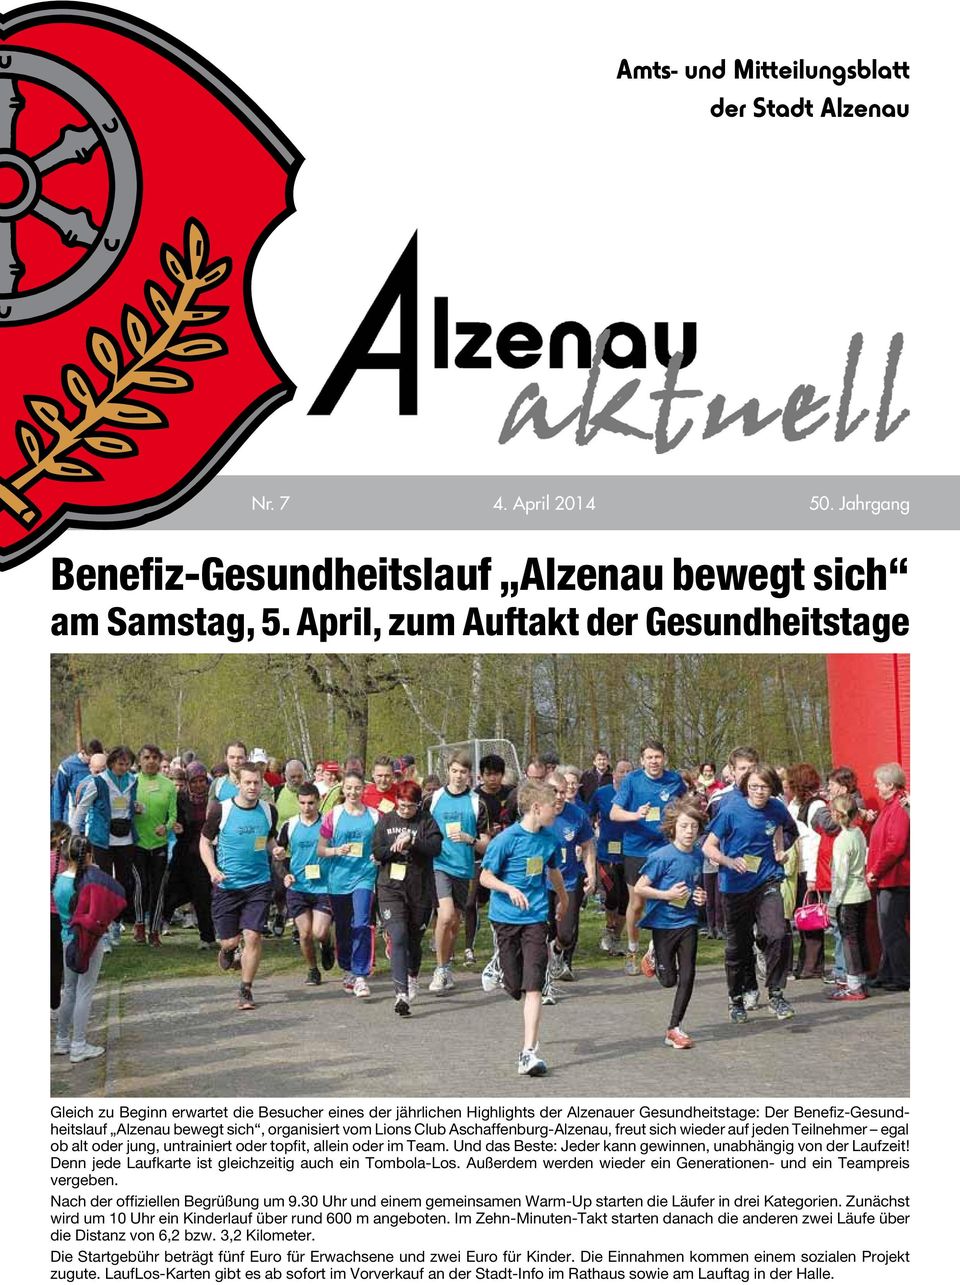 organisiert vom Lions Club Aschaffenburg-Alzenau, freut sich wieder auf jeden Teilnehmer egal ob alt oder jung, untrainiert oder topfit, allein oder im Team.